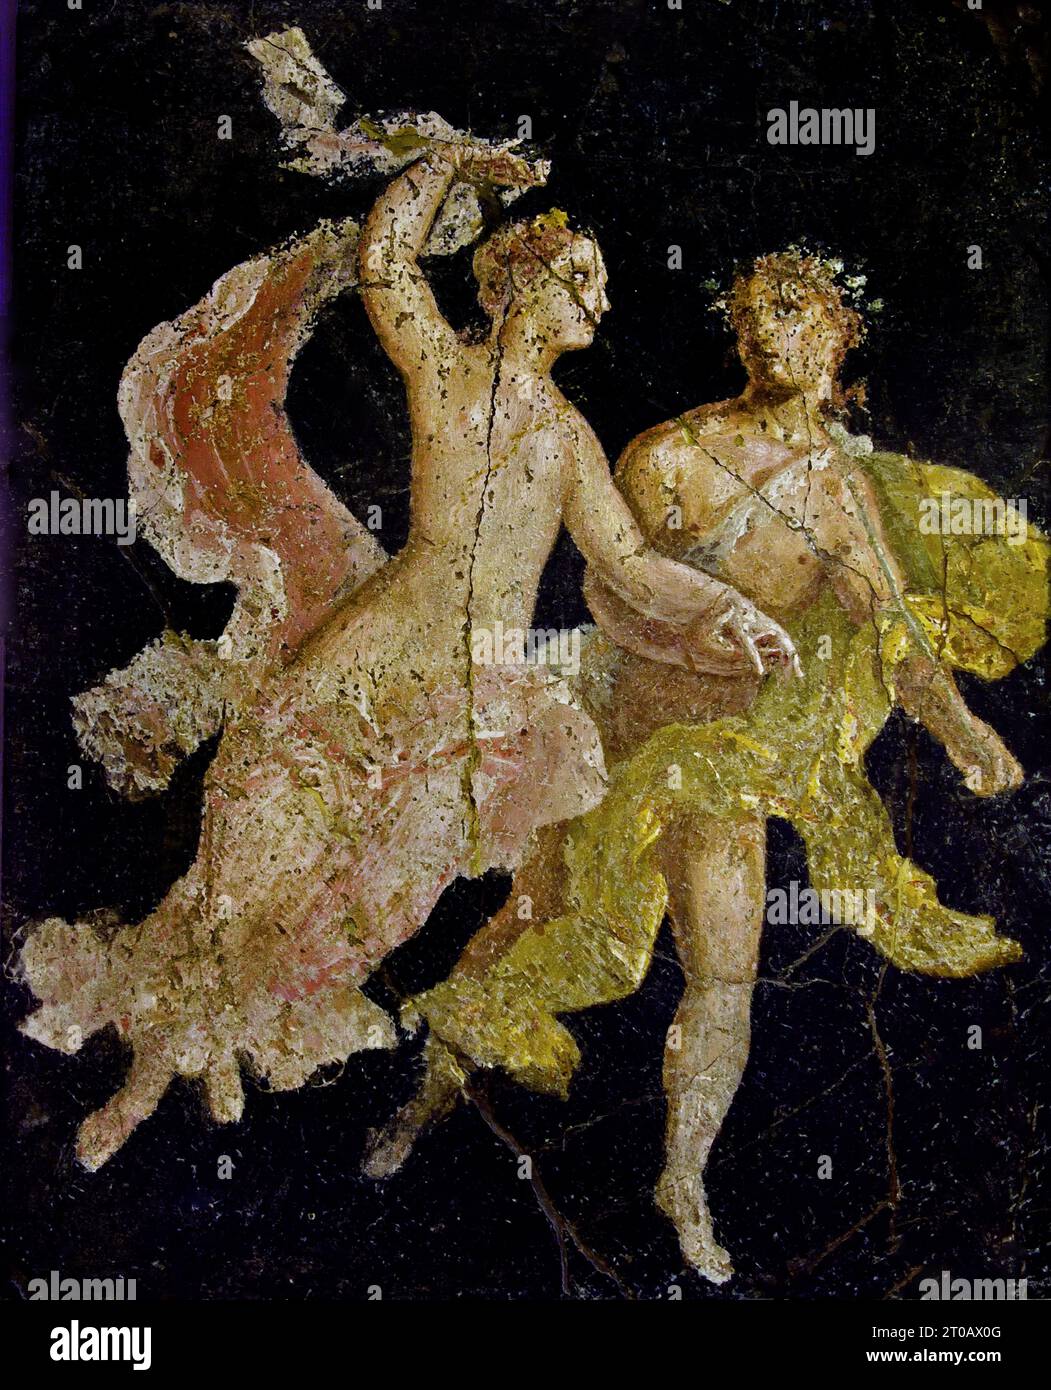 Paare im Flug, 10-37 n. Chr., Ariadne und Dionysos, Gott scheint zu begleiten, Ariadne in ihrem Wagen, wo sie blieb, strahlend mit der leuchtenden Krone, von der sie erhalten hatte, Dionysos als Hochzeitsgeschenk Fresco Pompeji Römische Stadt befindet sich in der Nähe von Neapel in der Region Kampanien in Italien. Pompeji wurde bei der Eruption des Vesuvs 79 n. Chr. unter 4-6 m vulkanischer Asche und Bimsstein begraben. Italien Stockfoto